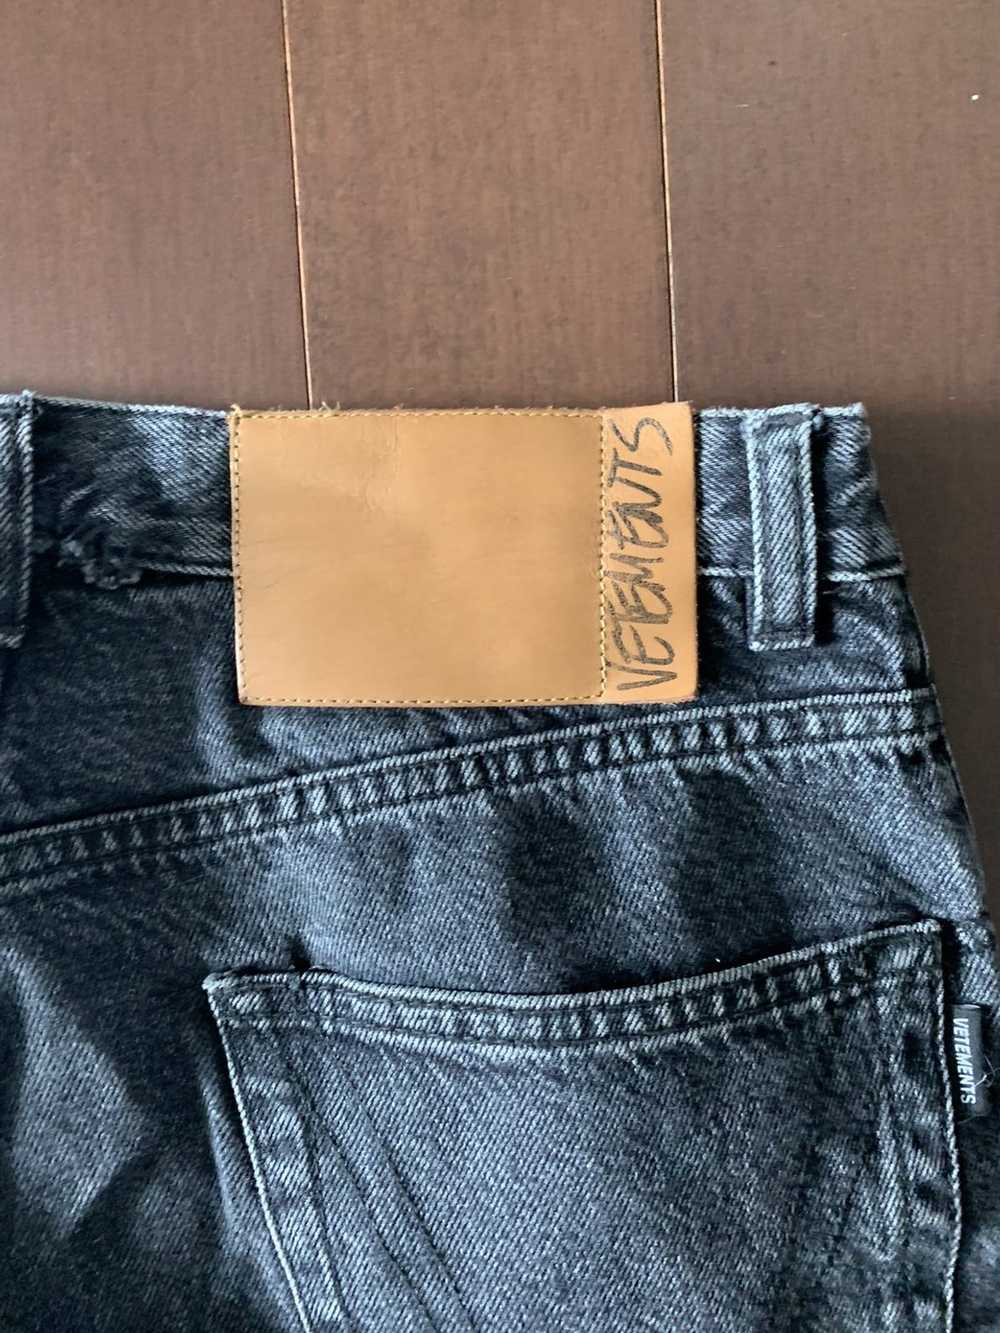 Vetements Vetements zipper jeans - image 3